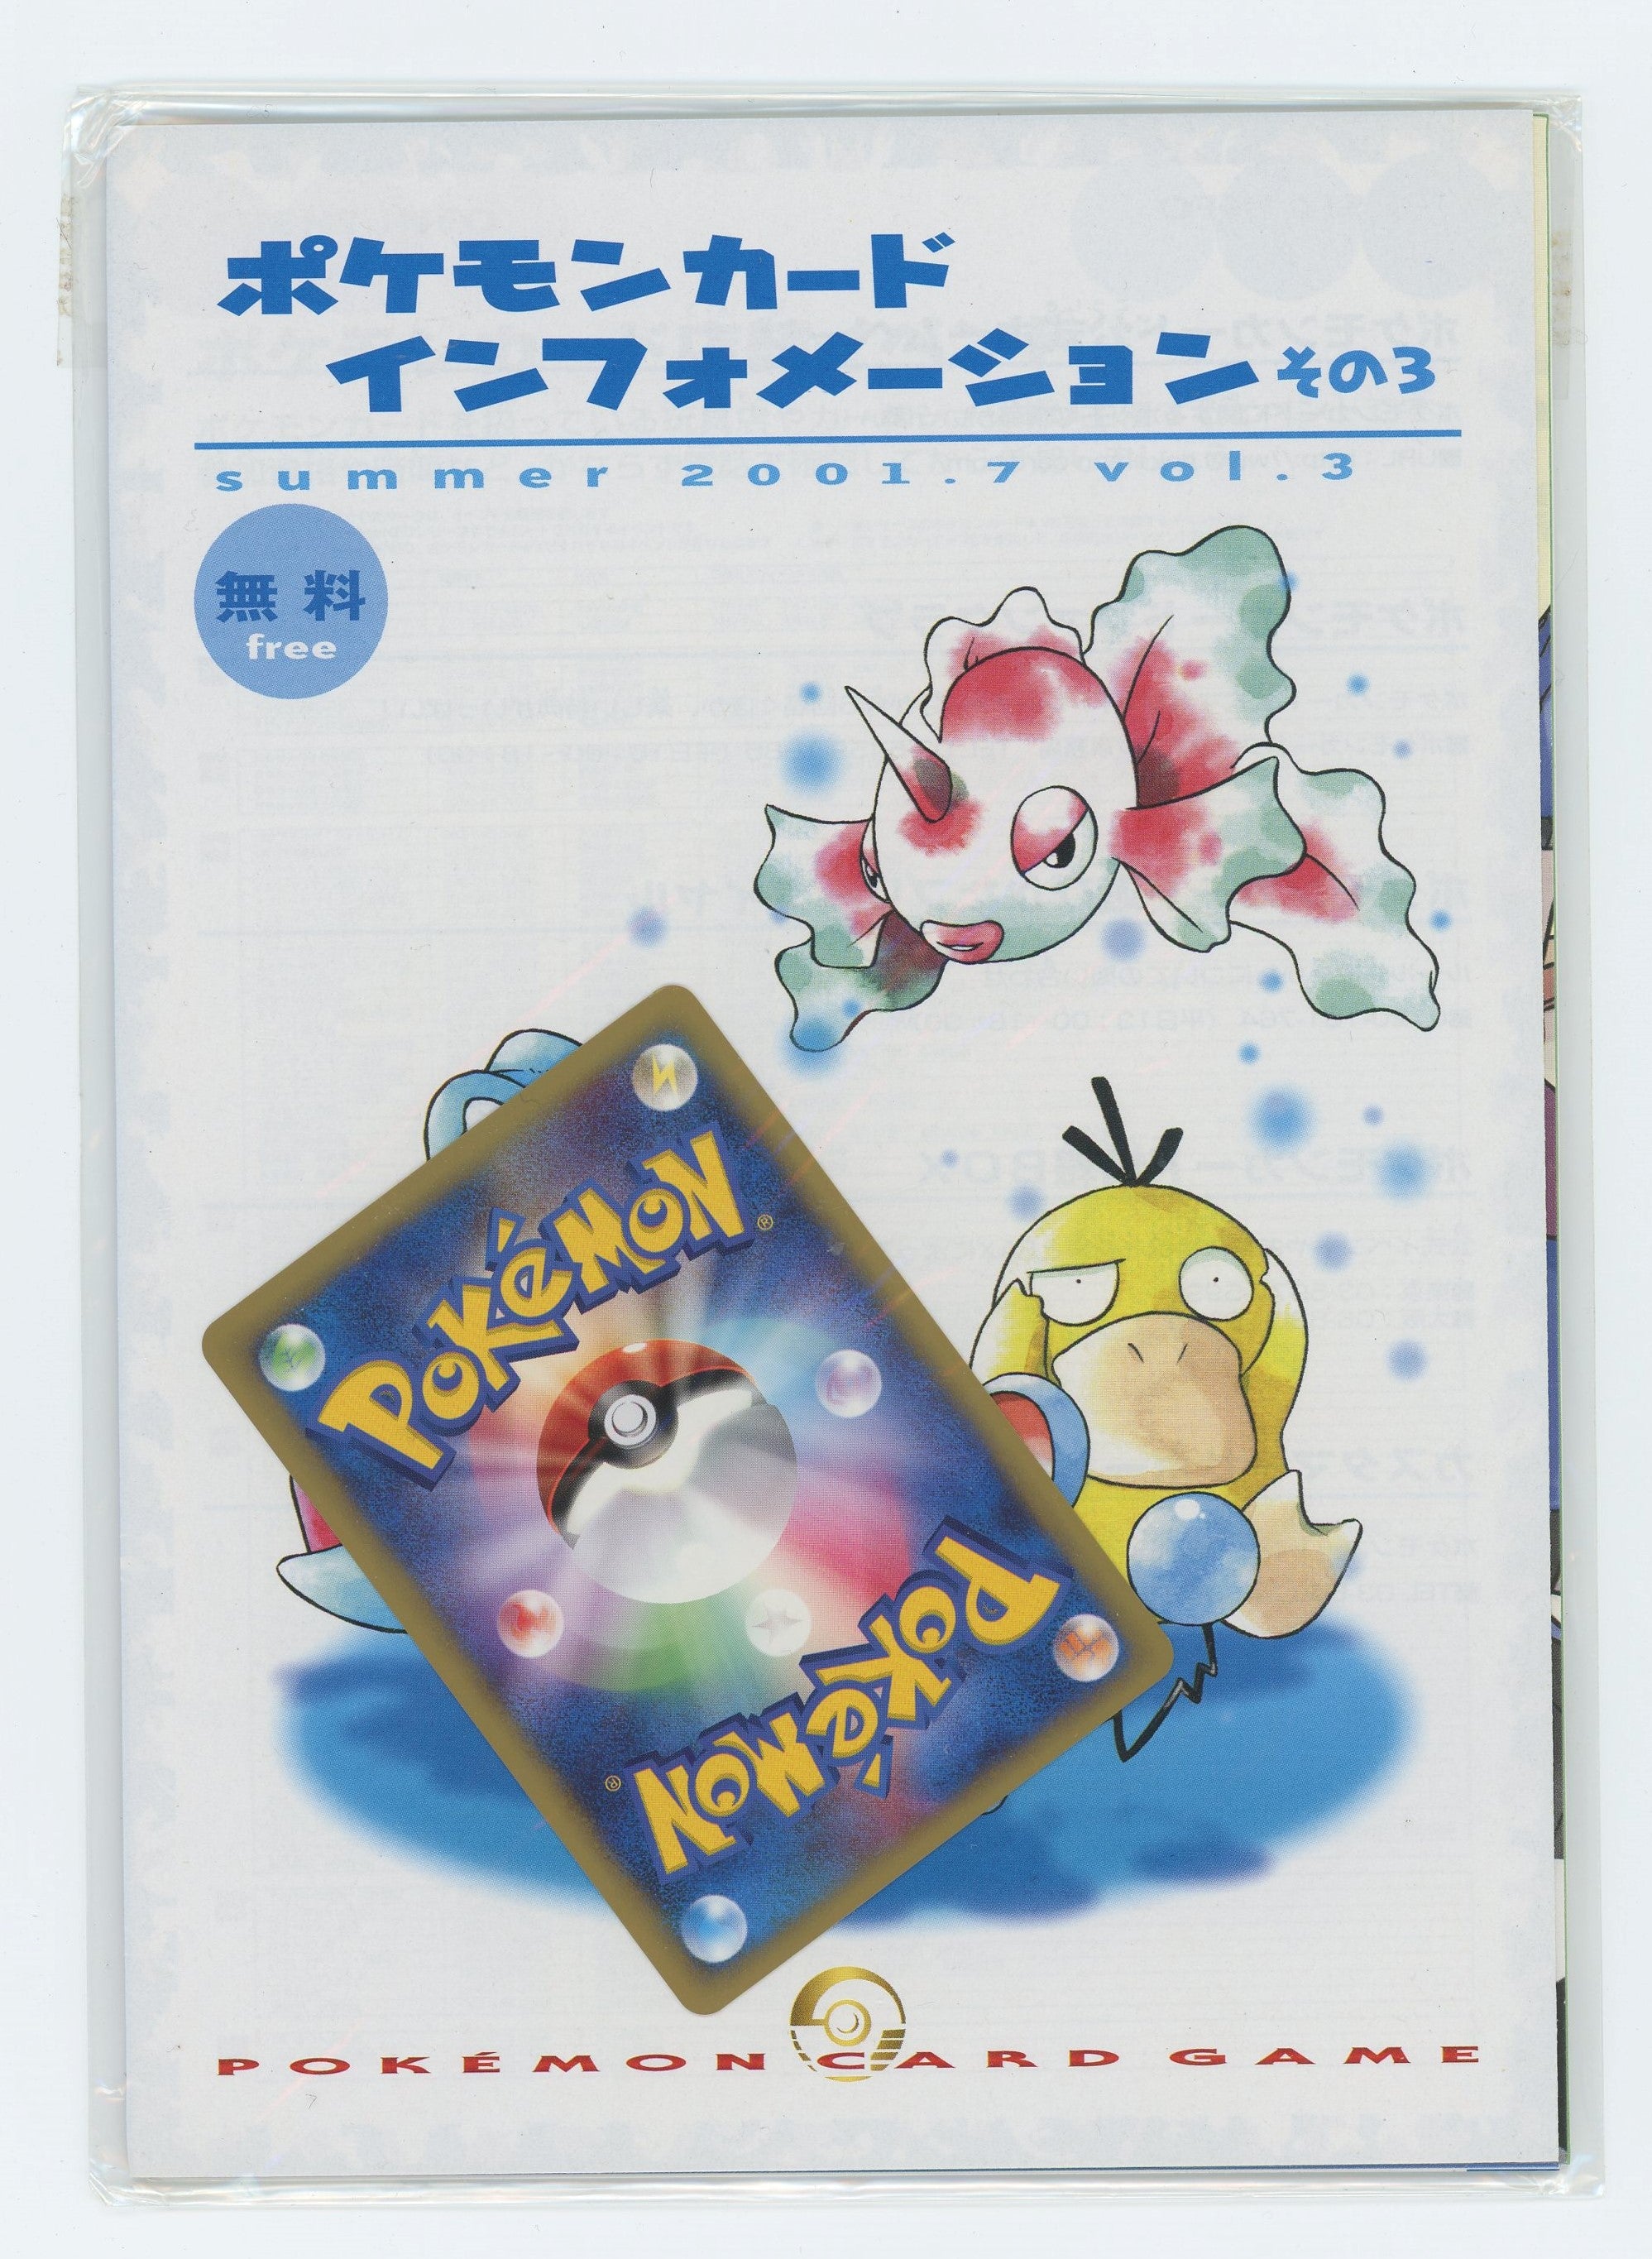 Japanese Pokémon - Pokémon Card Information Vol. 3 - Sealed w/ Promo (Pryce's Lapras - Unlimited) (Summer 2001)